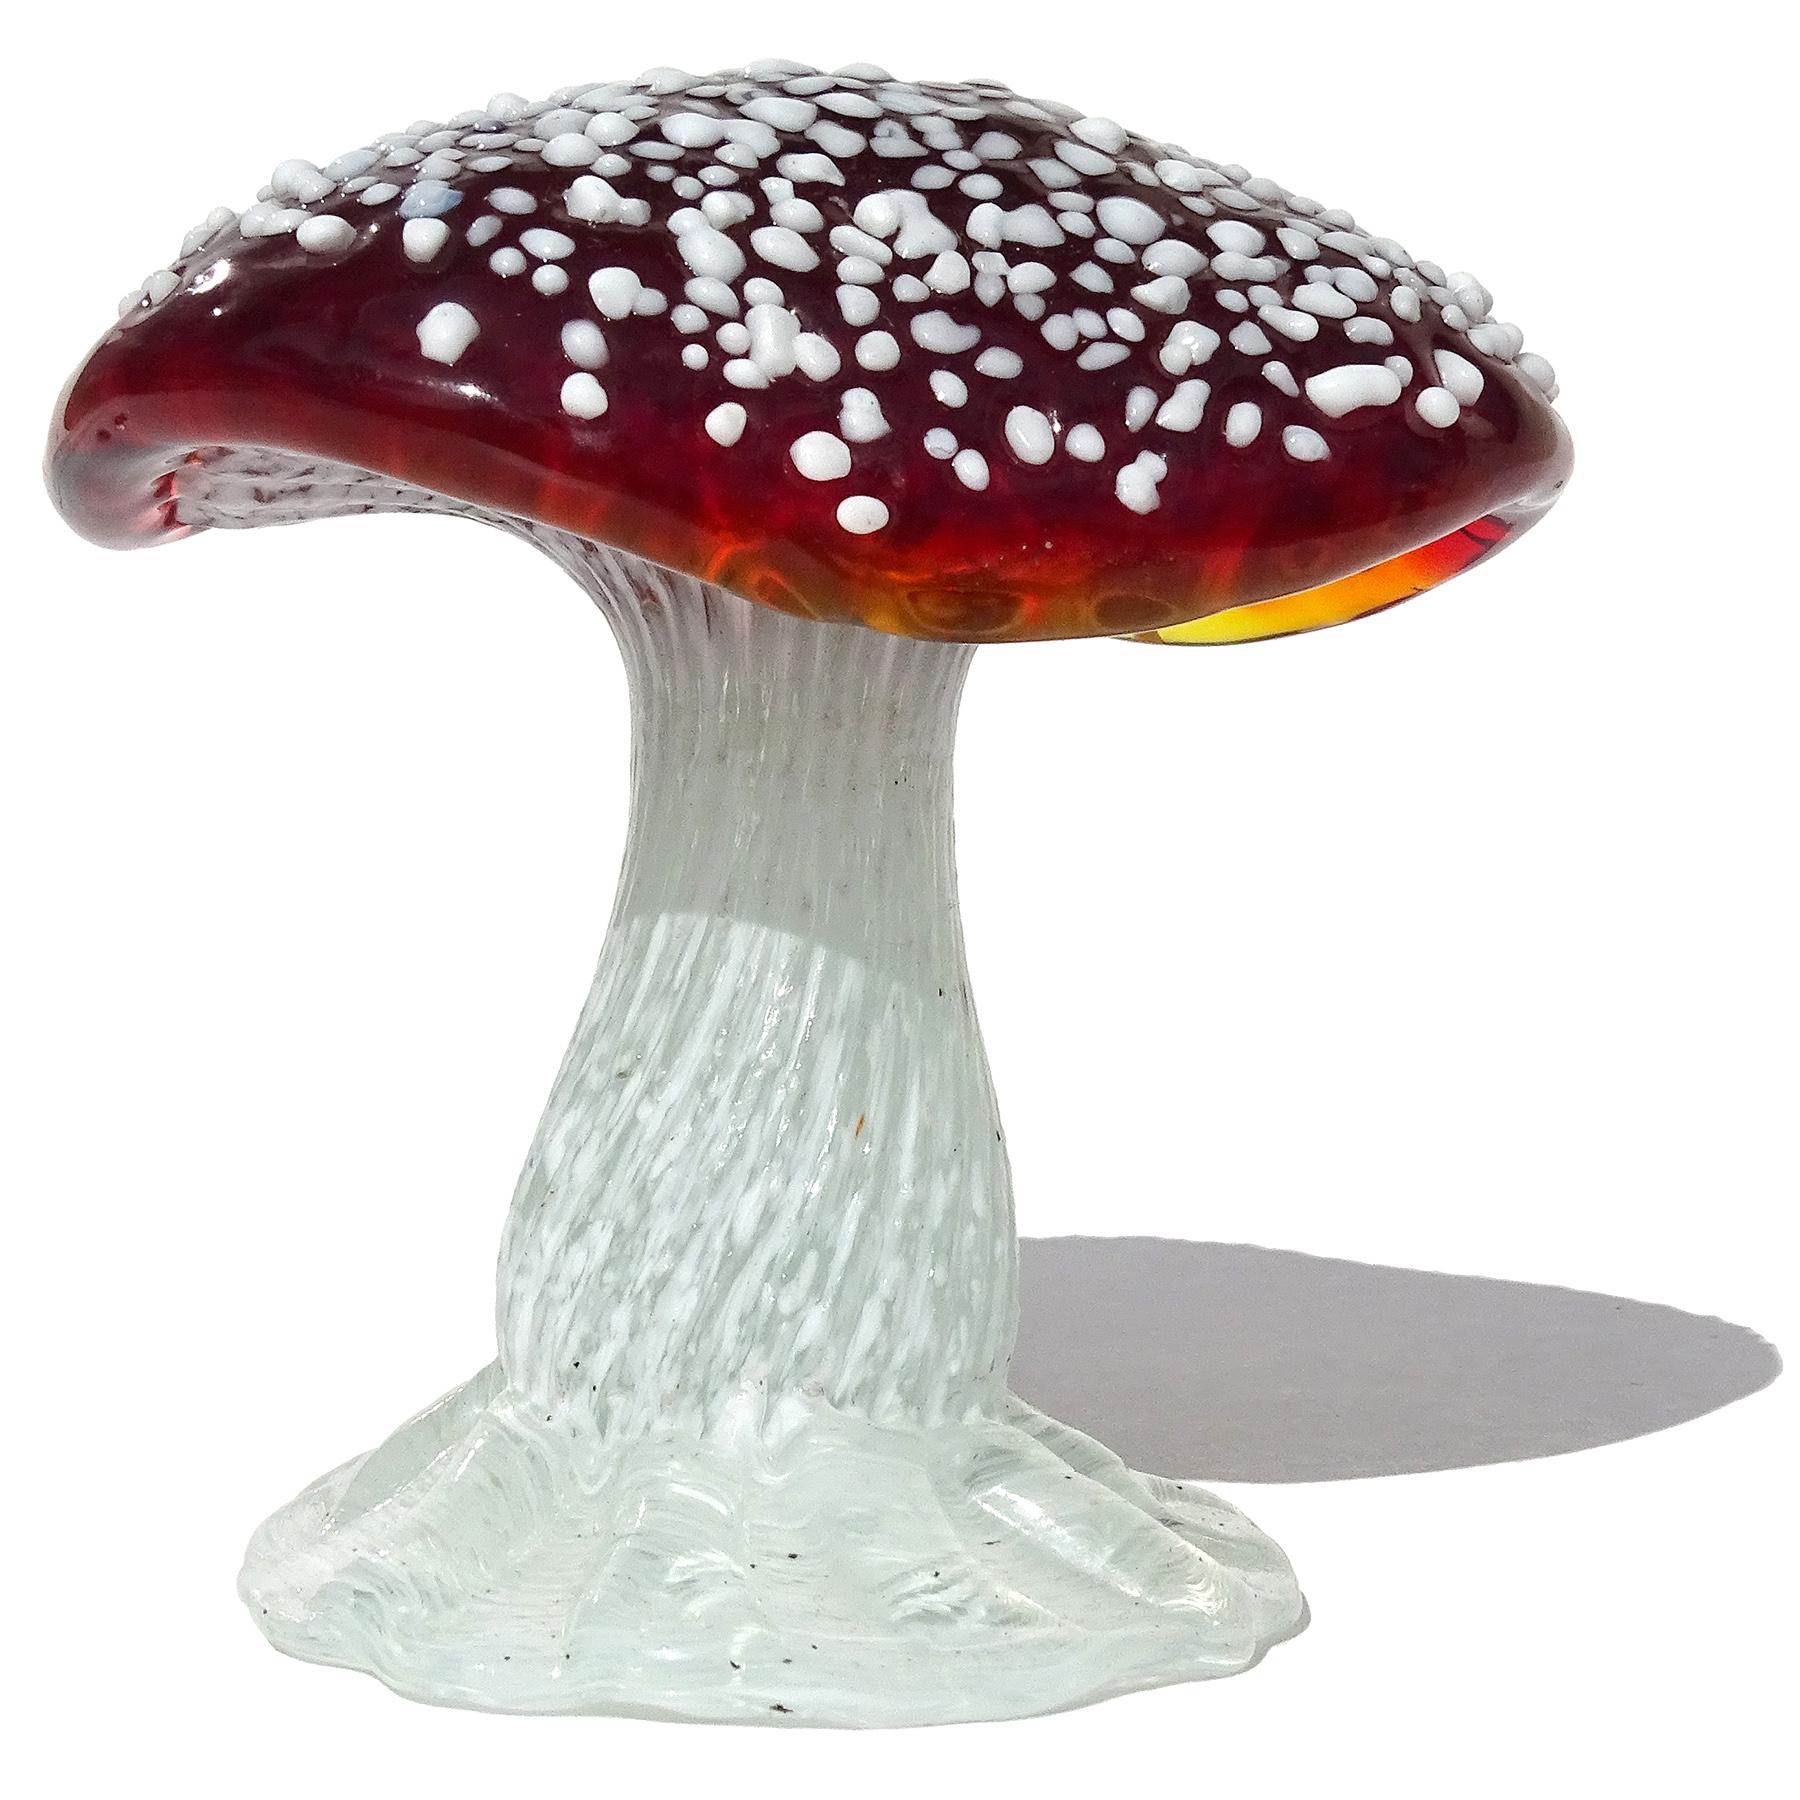 uranium glass mushrooms